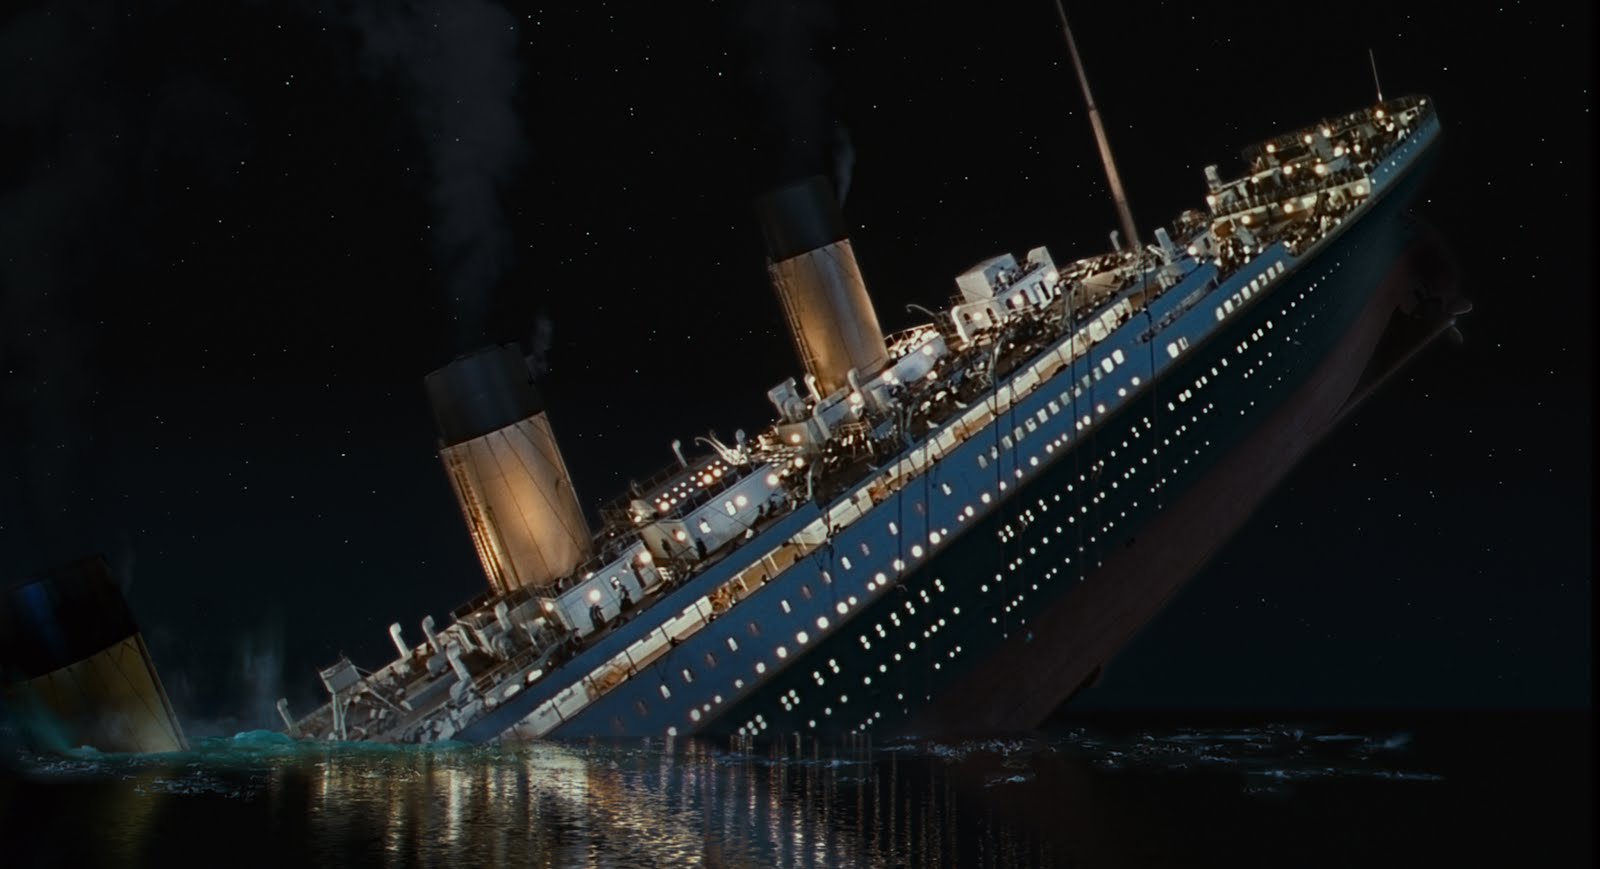 Análisis del fallo del Titanic